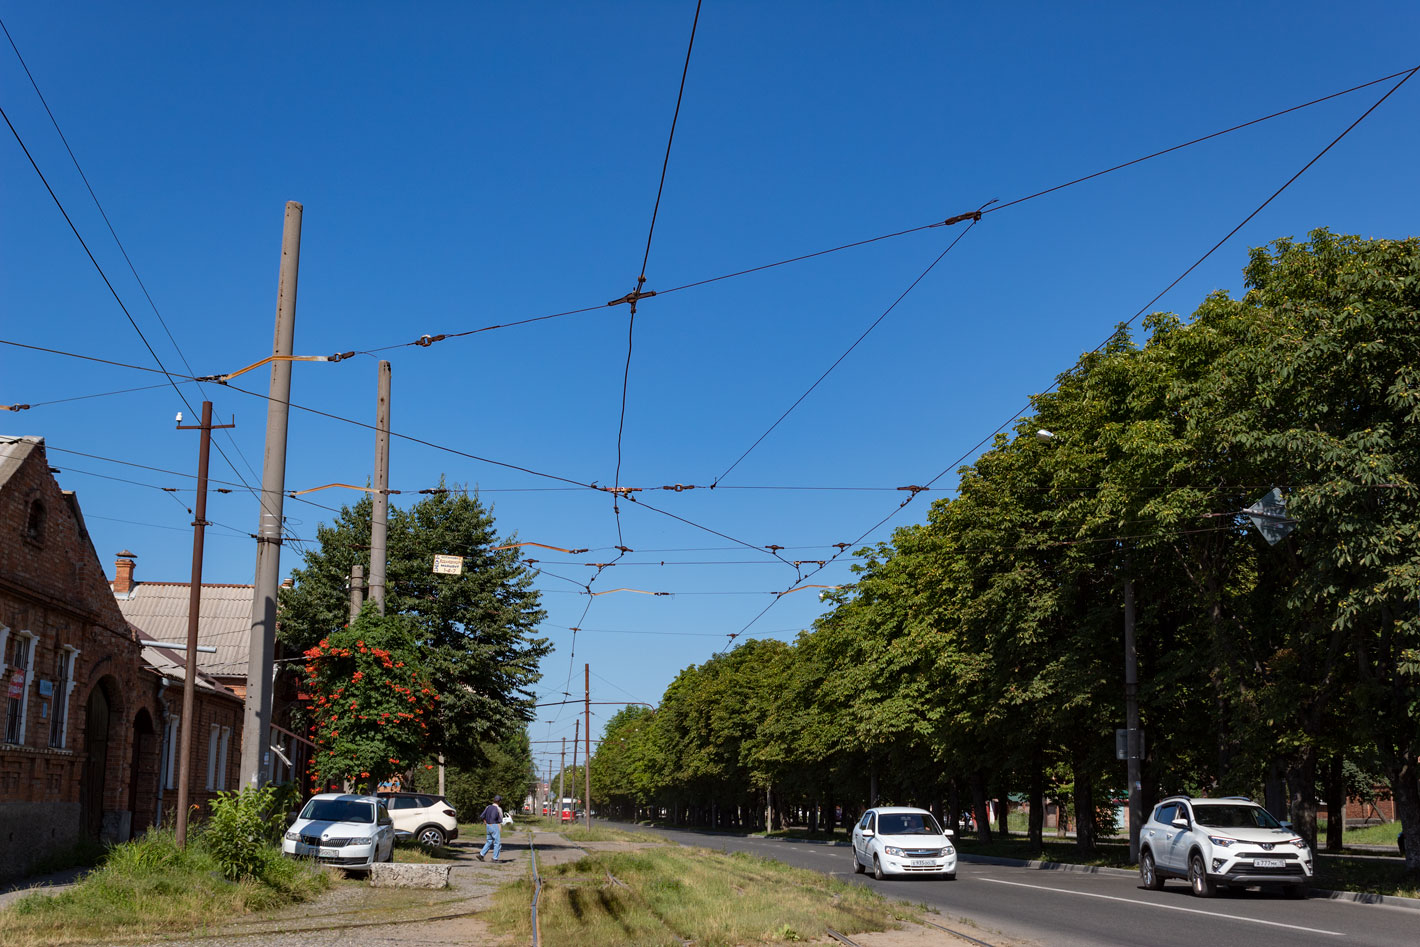 Владикавказ — Контактная сеть — трамвай; Владикавказ — Разные фотографии — трамвай